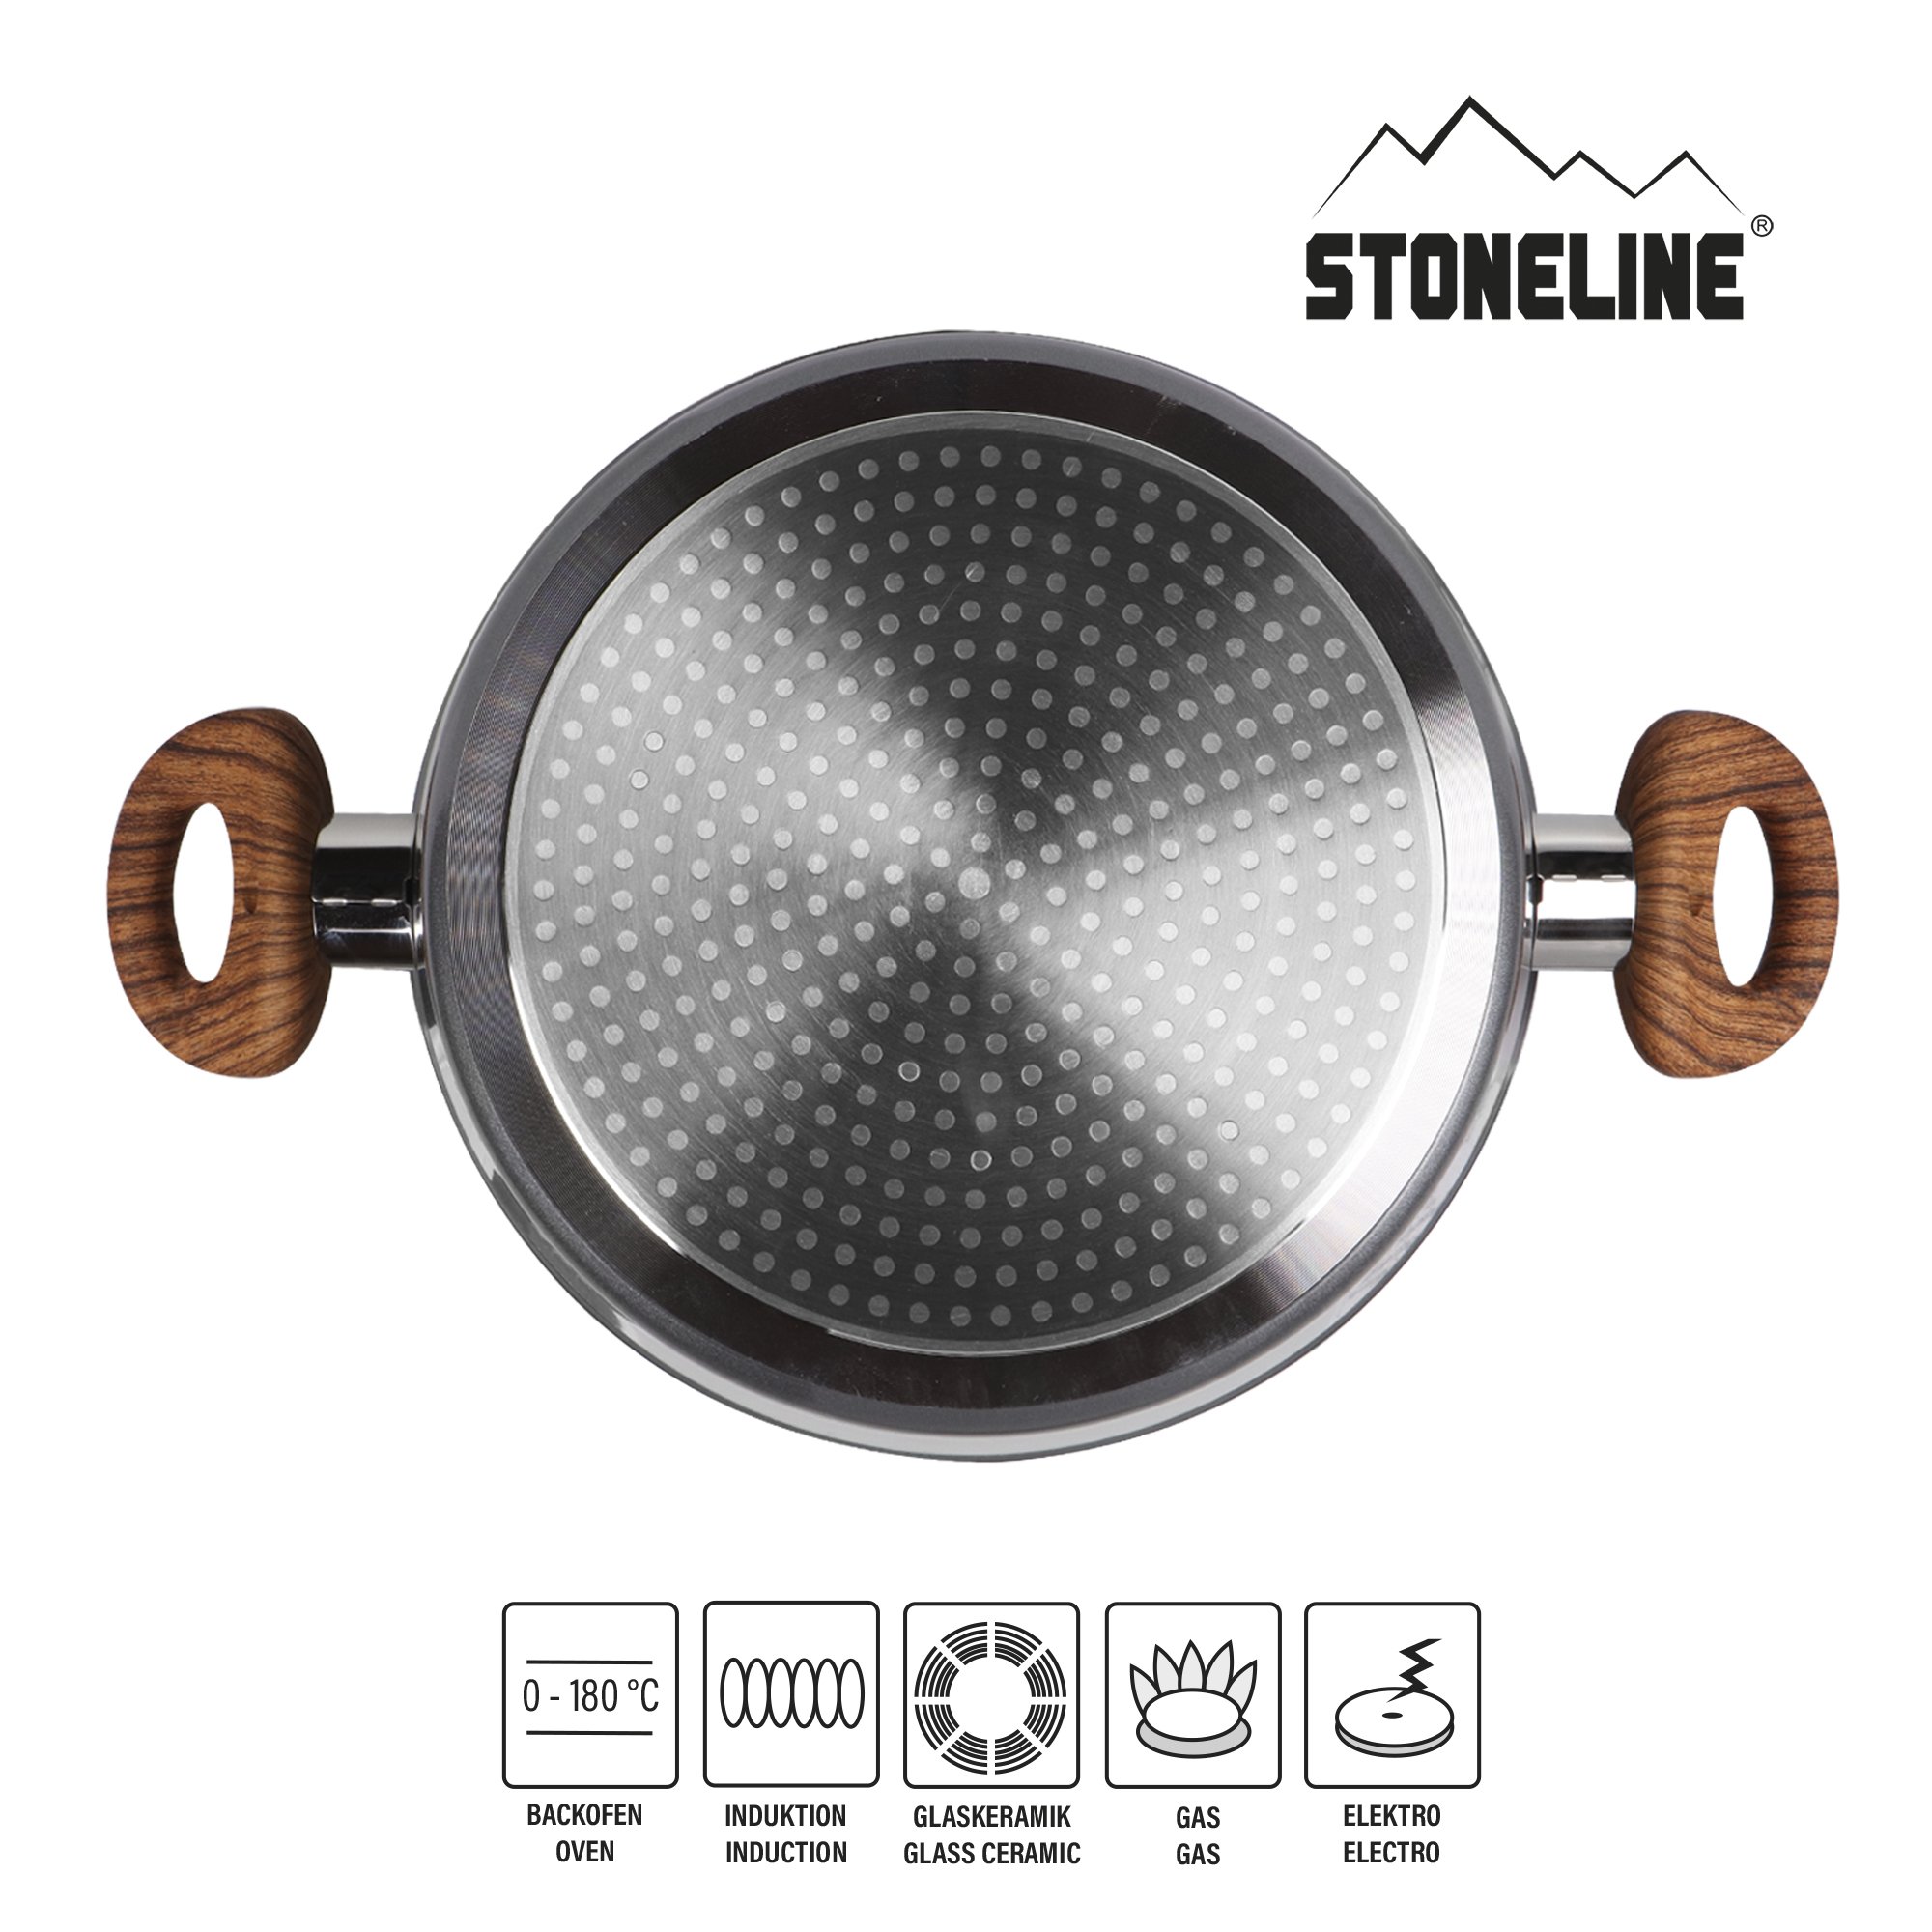 STONELINE® Back to Nature batterie de cuisine, 14 pièces, avec couvercles, casseroles & poêles compatible induction